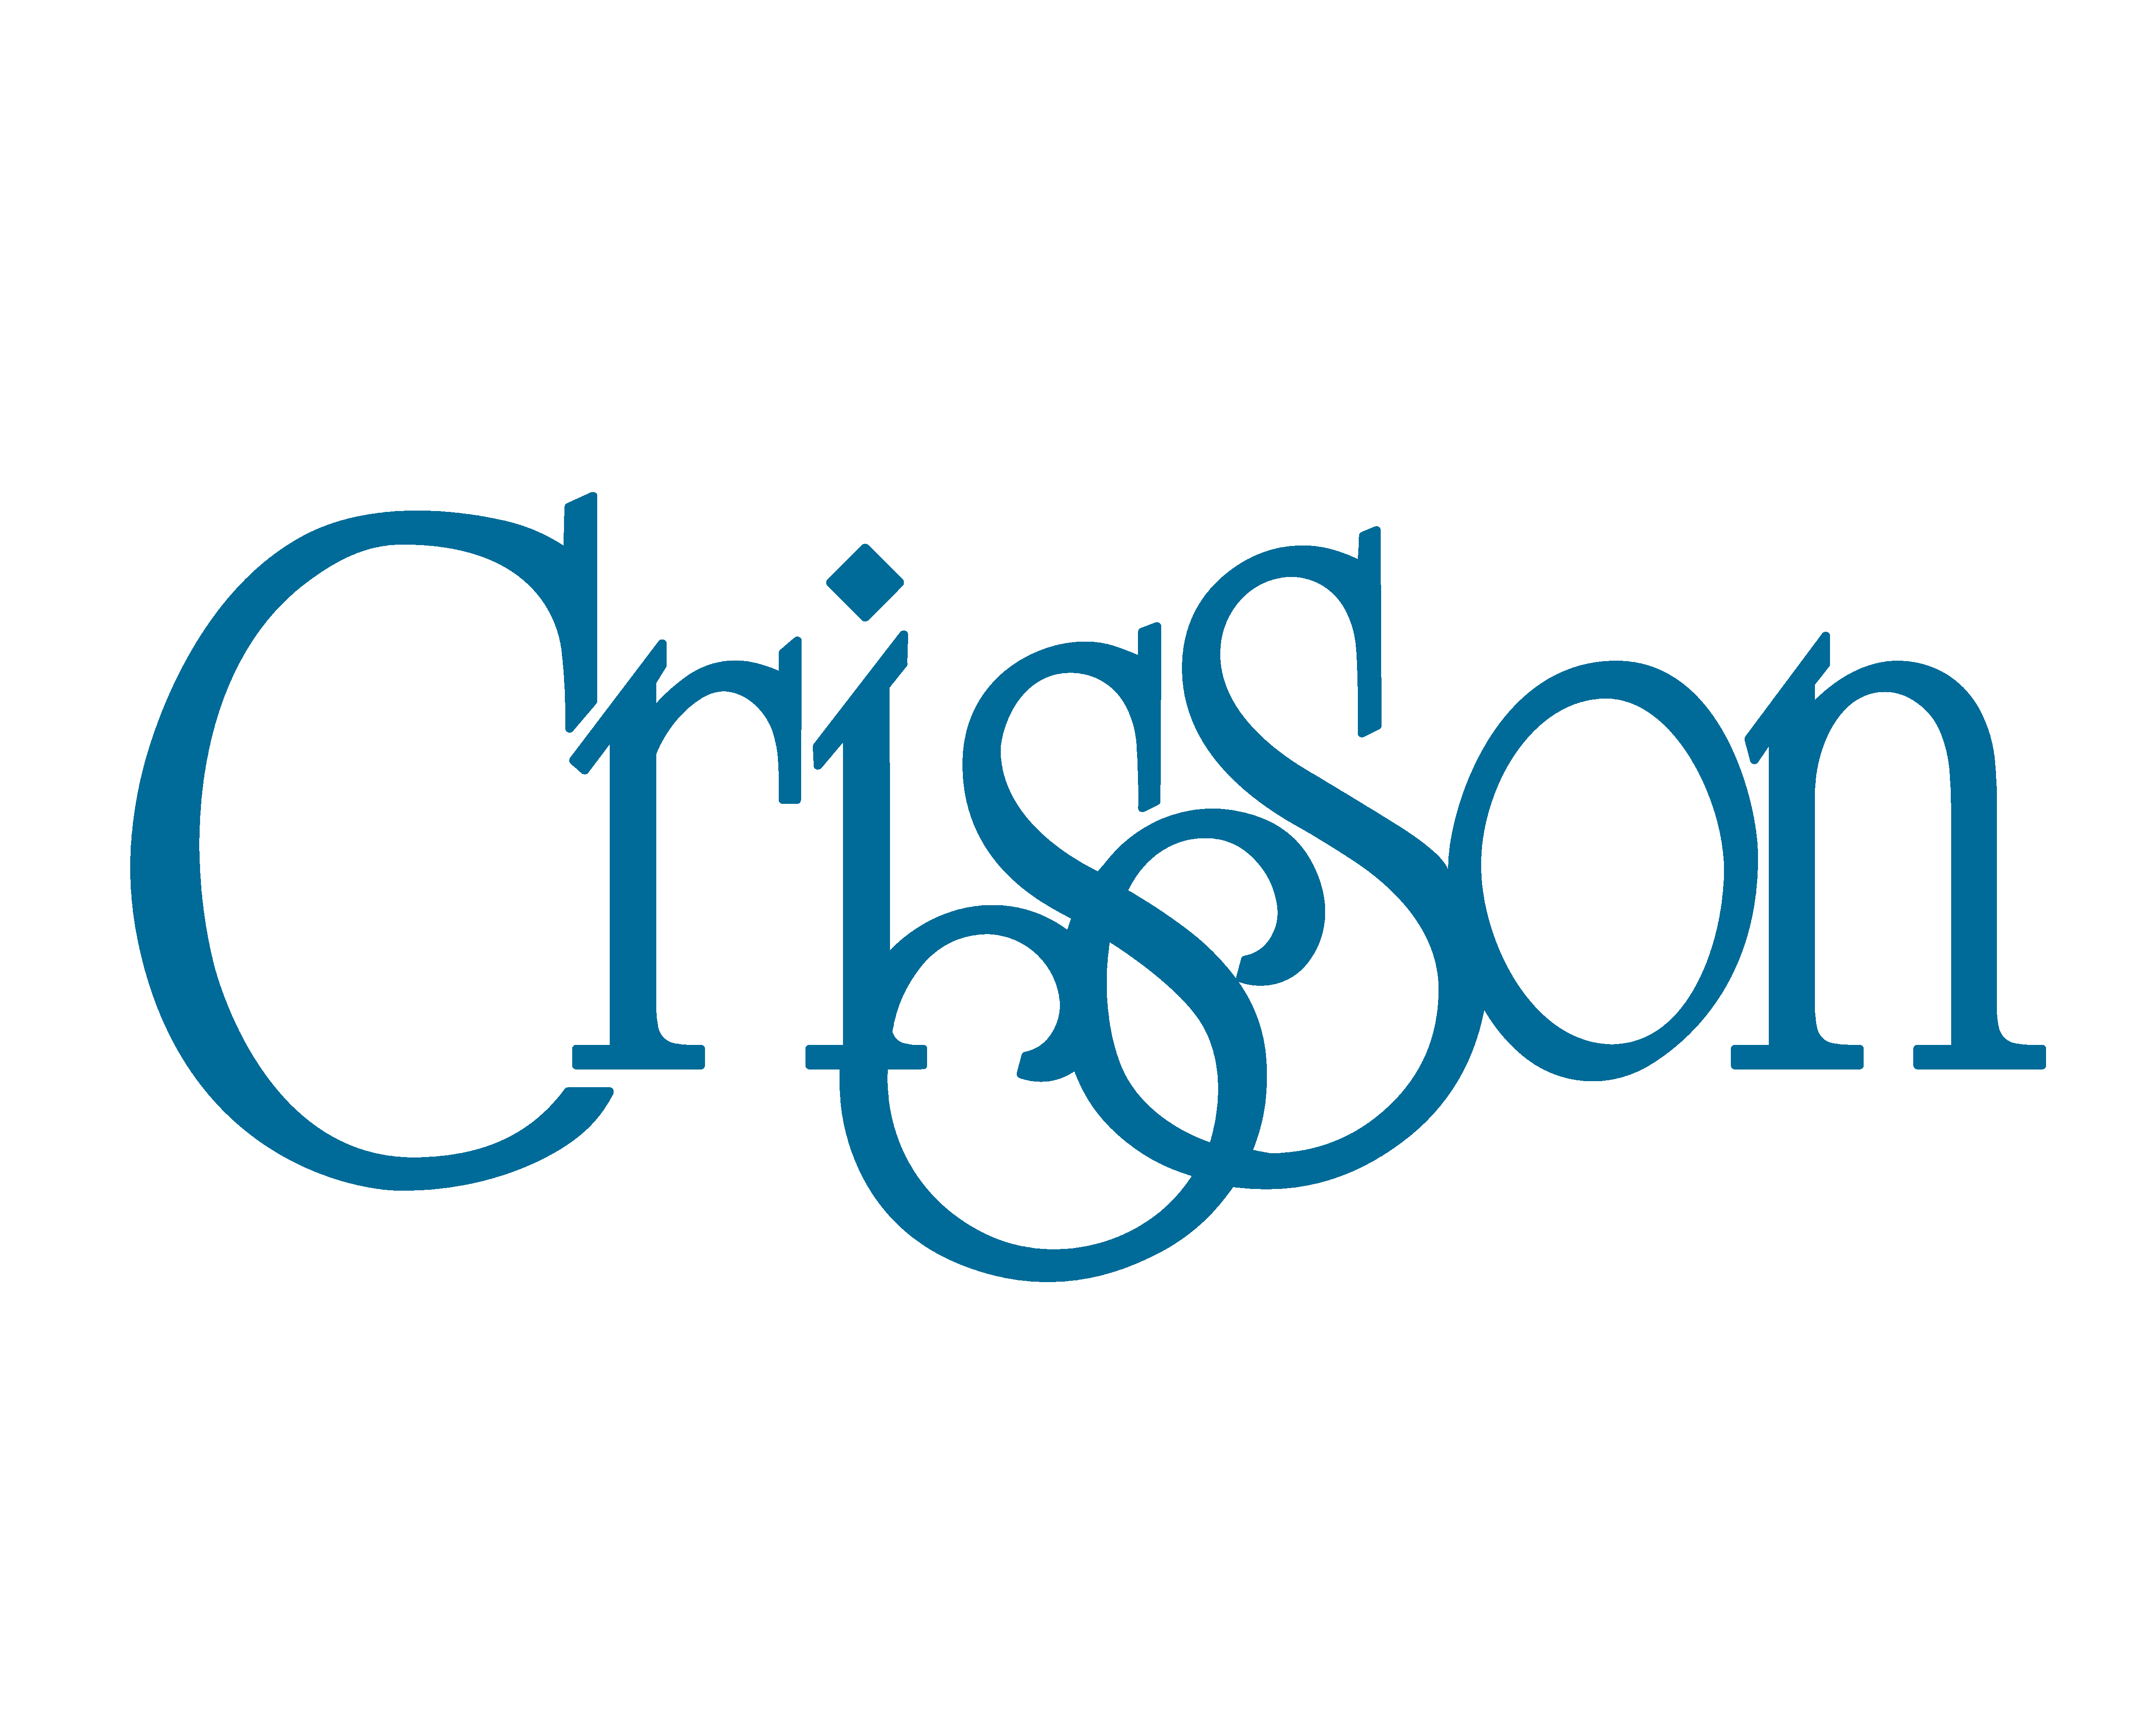 Crisson Online